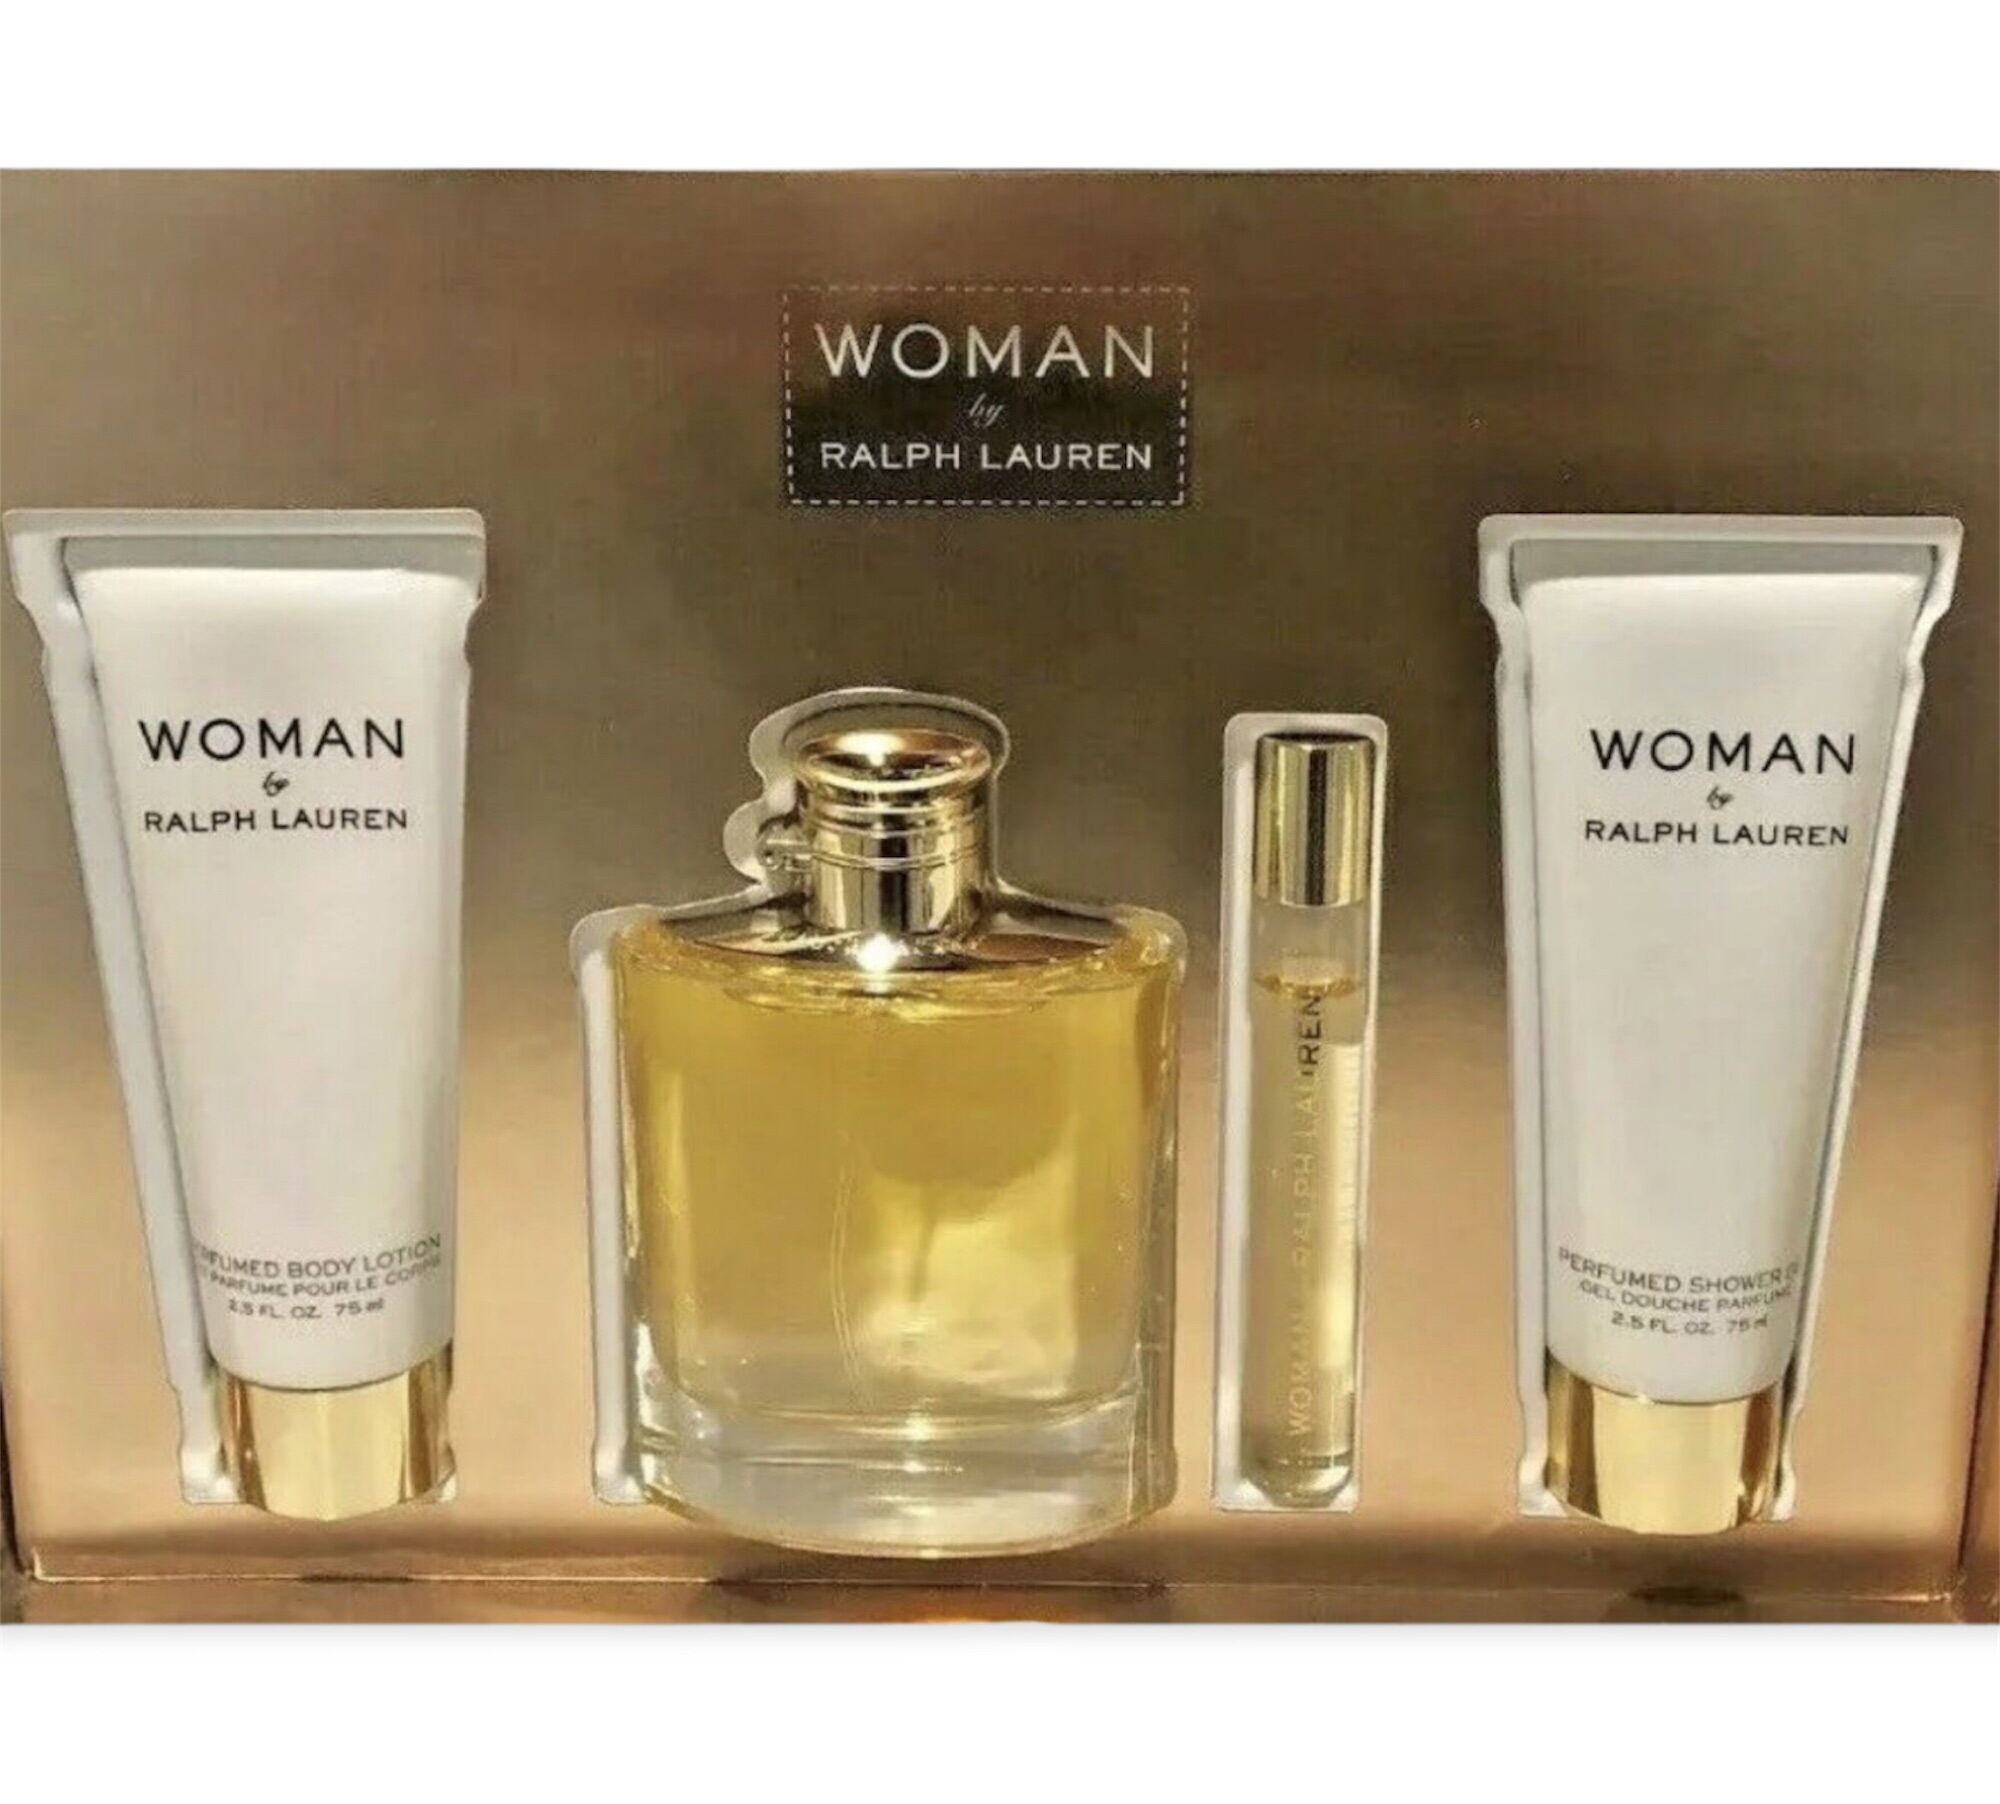 HCM] Set nước hoa Woman by Ralph Lauren 